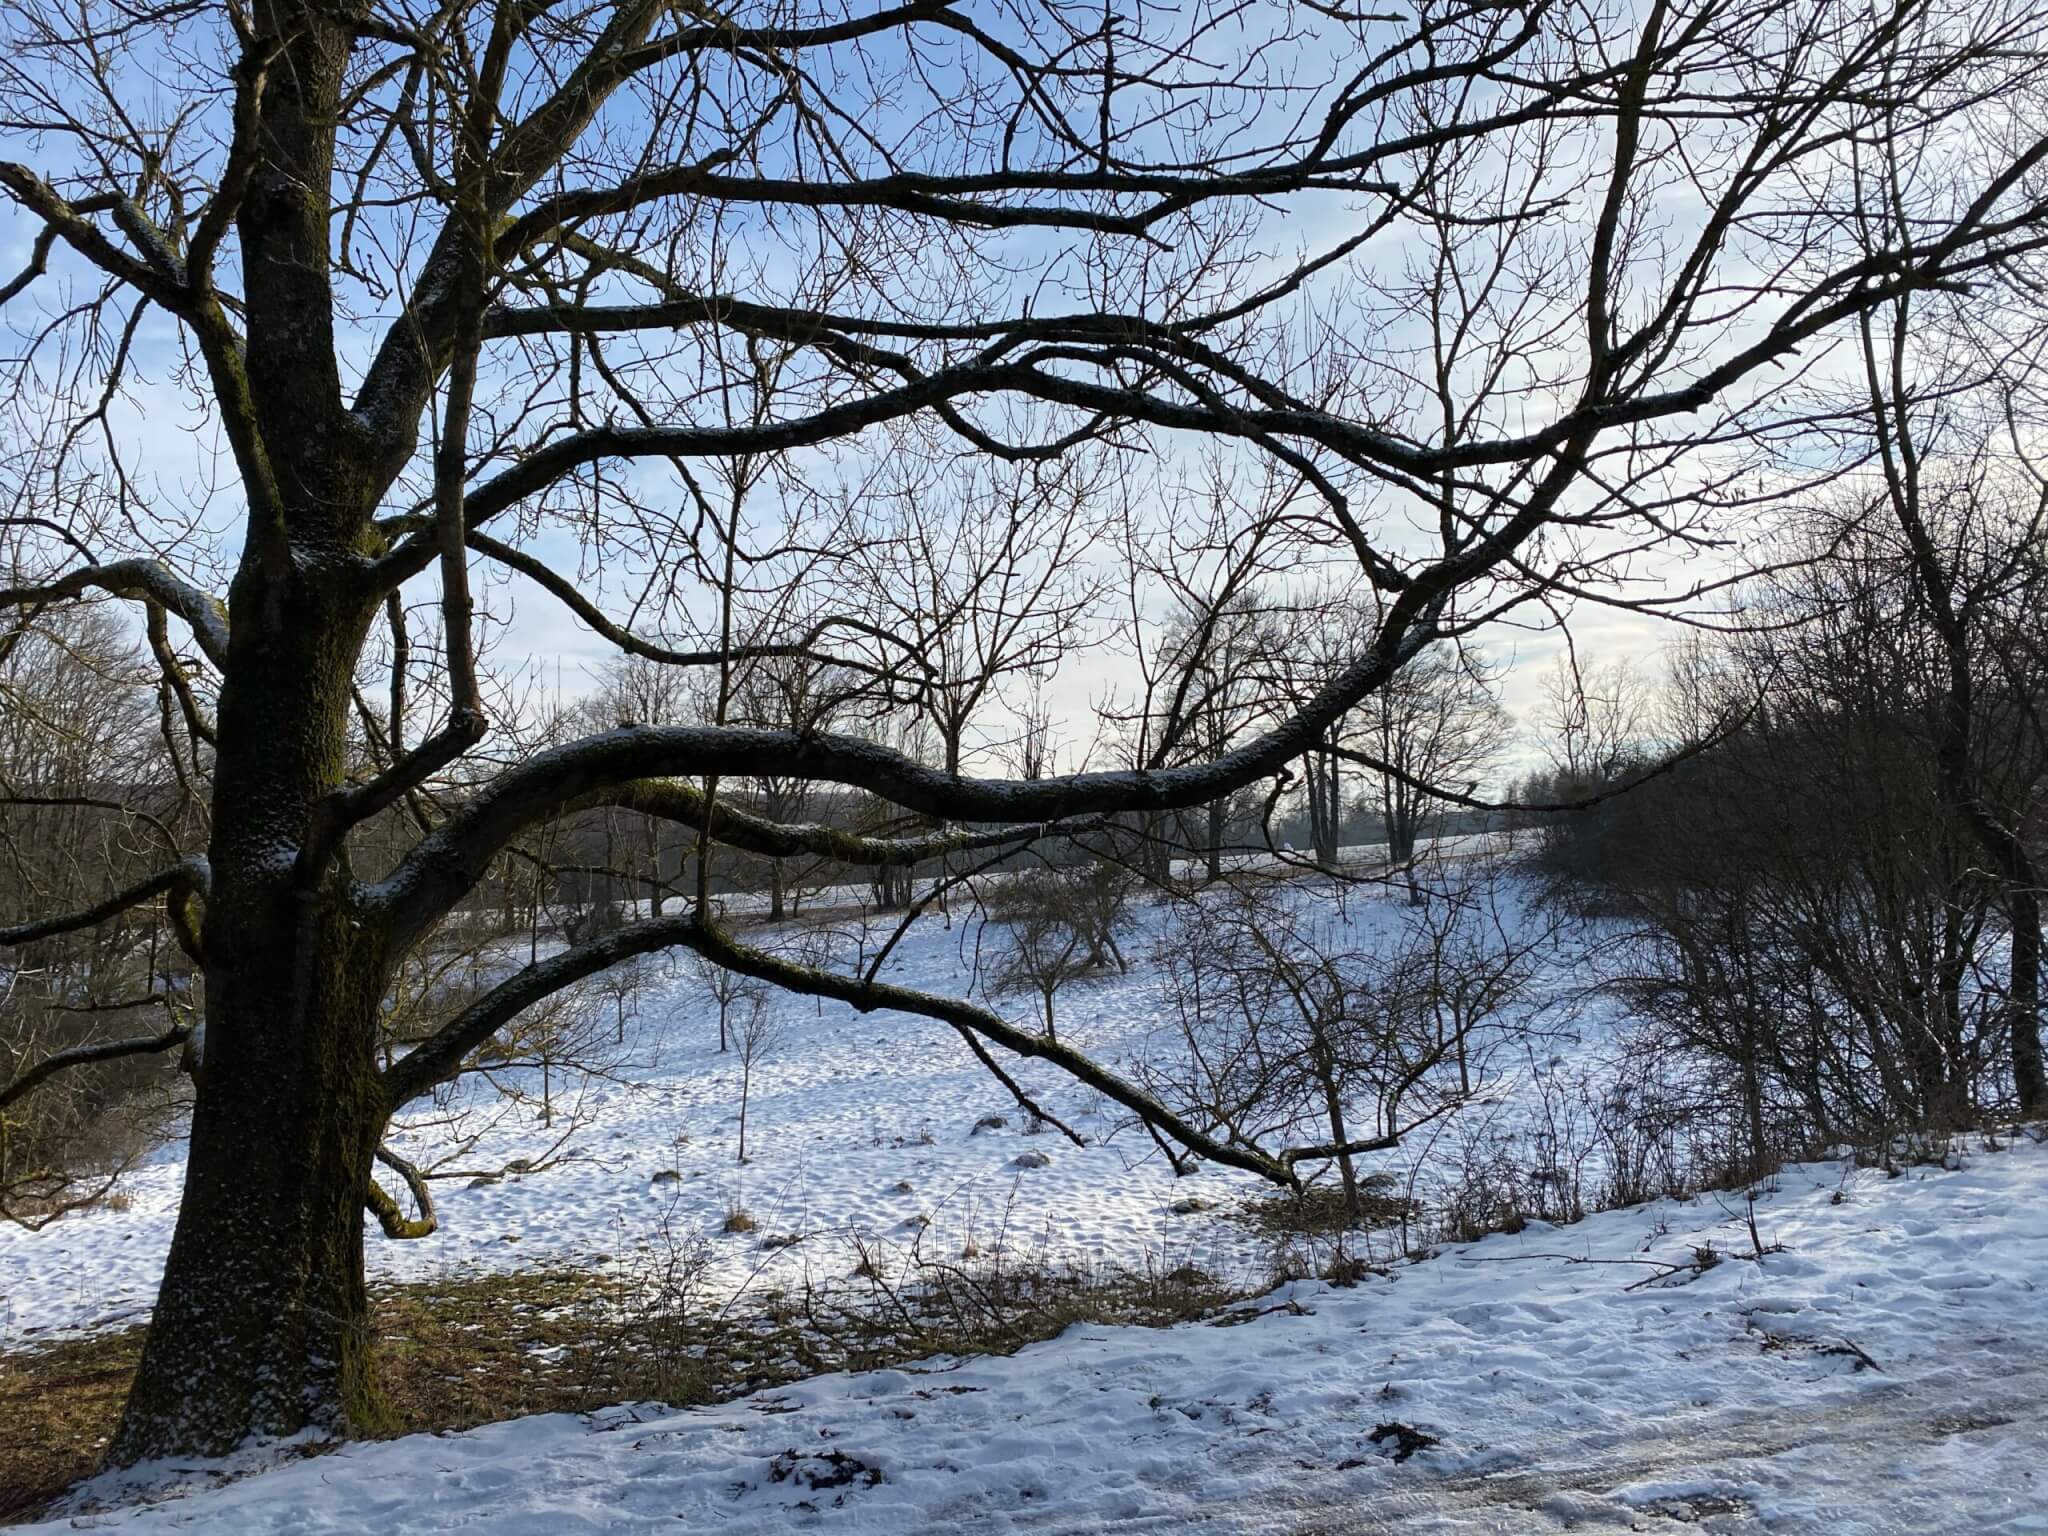 Kerstlingeröder Feld / Field in the forest, Göttingen ⋆ The Passenger